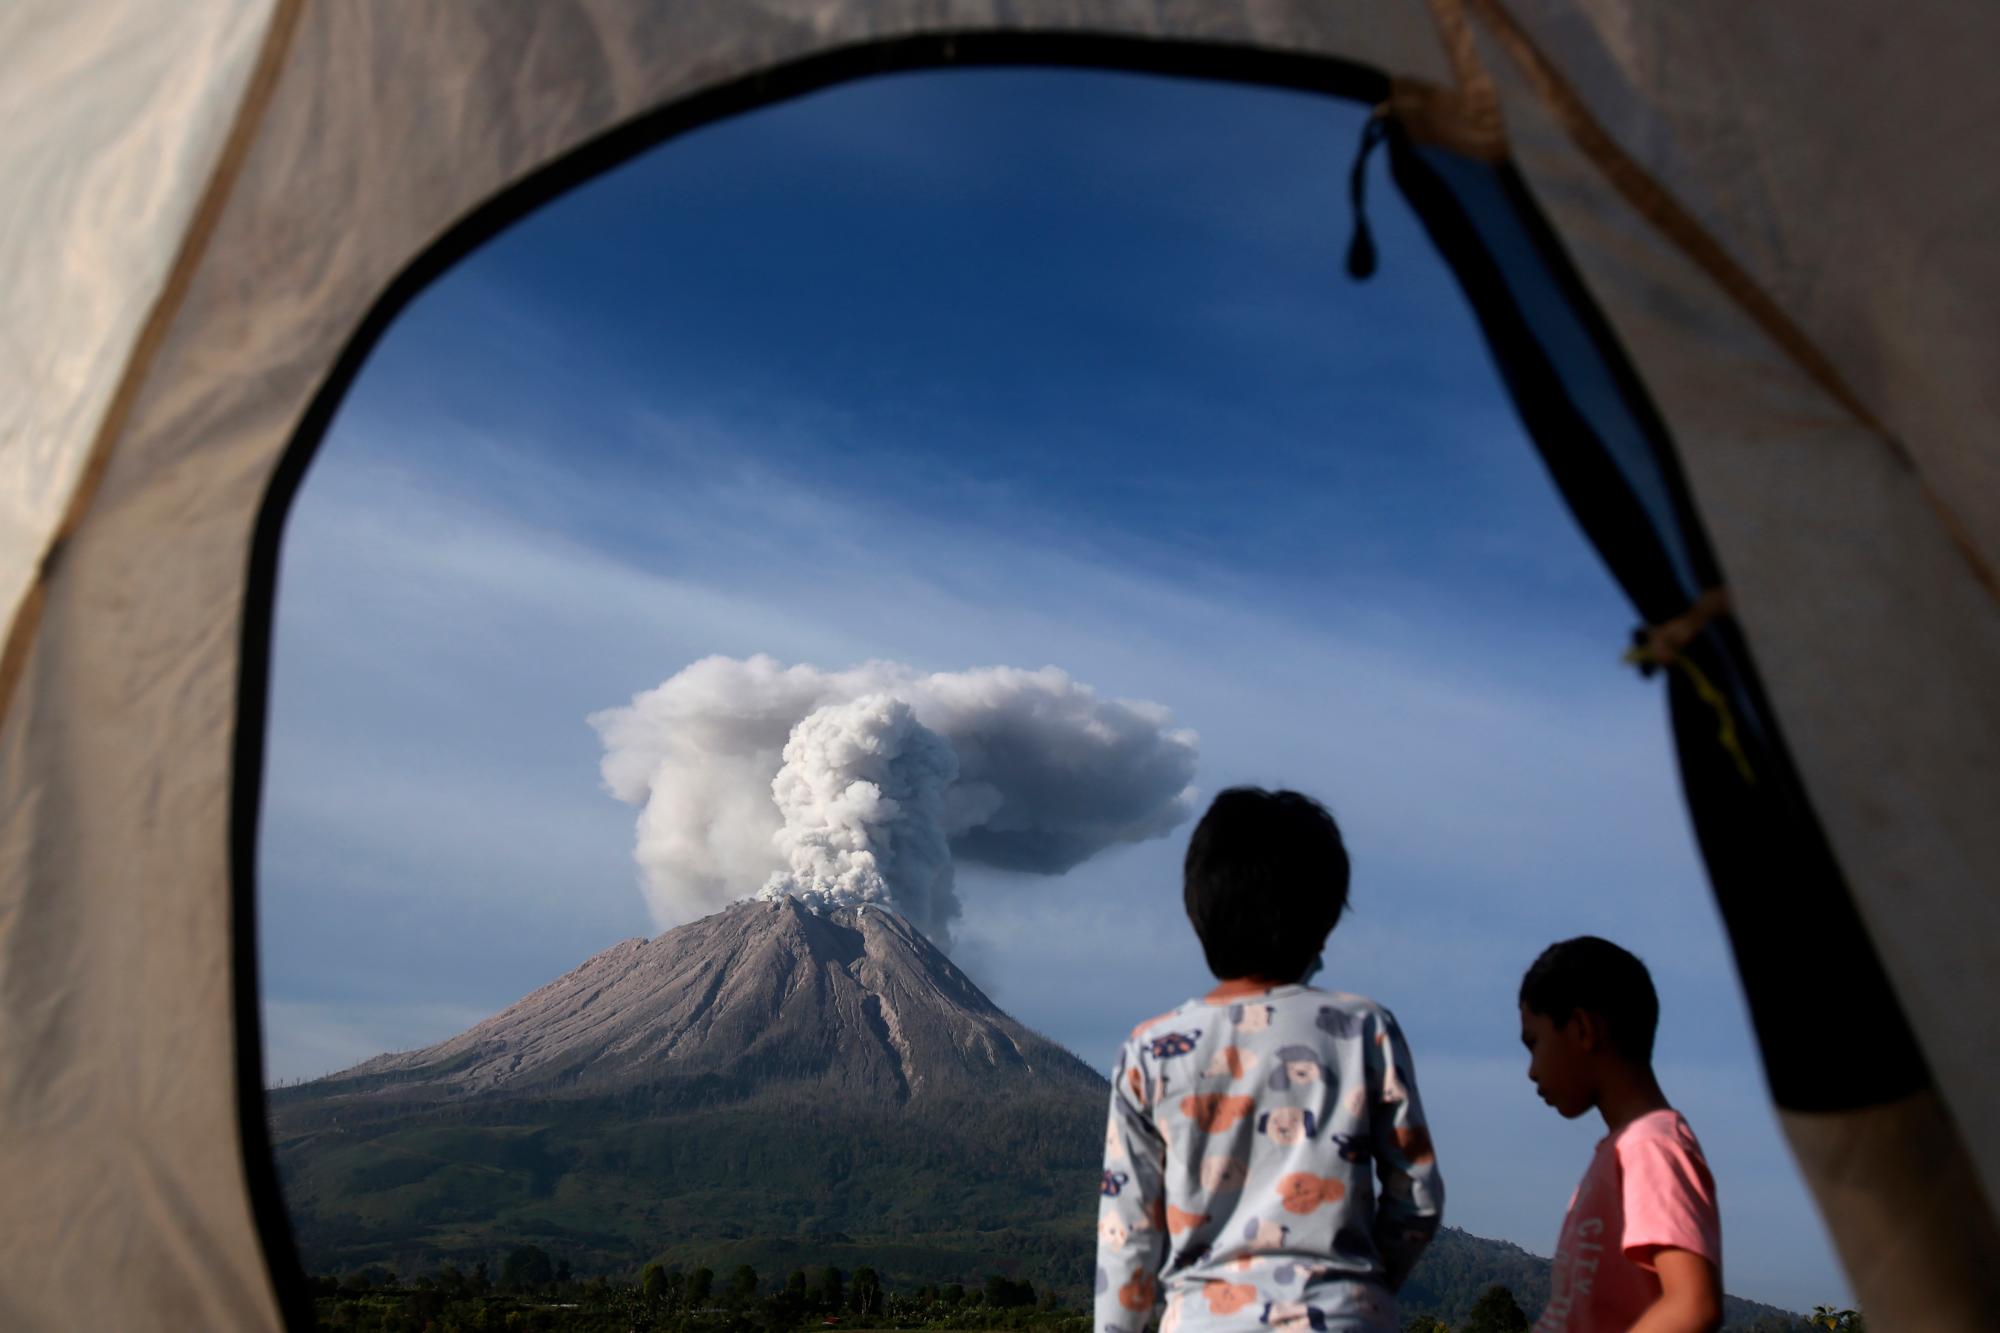 Los campistas son vistos desde la apertura de una carpa mientras observan la erupción del Monte Sinabung en Karo, en el norte de Sumatra, Indonesia, el jueves 11 de marzo de 2021. El volcán de 2.600 metros (8.530 pies) desató una avalancha de abrasadoras nubes de gas que fluían por su pendientes durante la erupción del jueves. No se informó de víctimas.